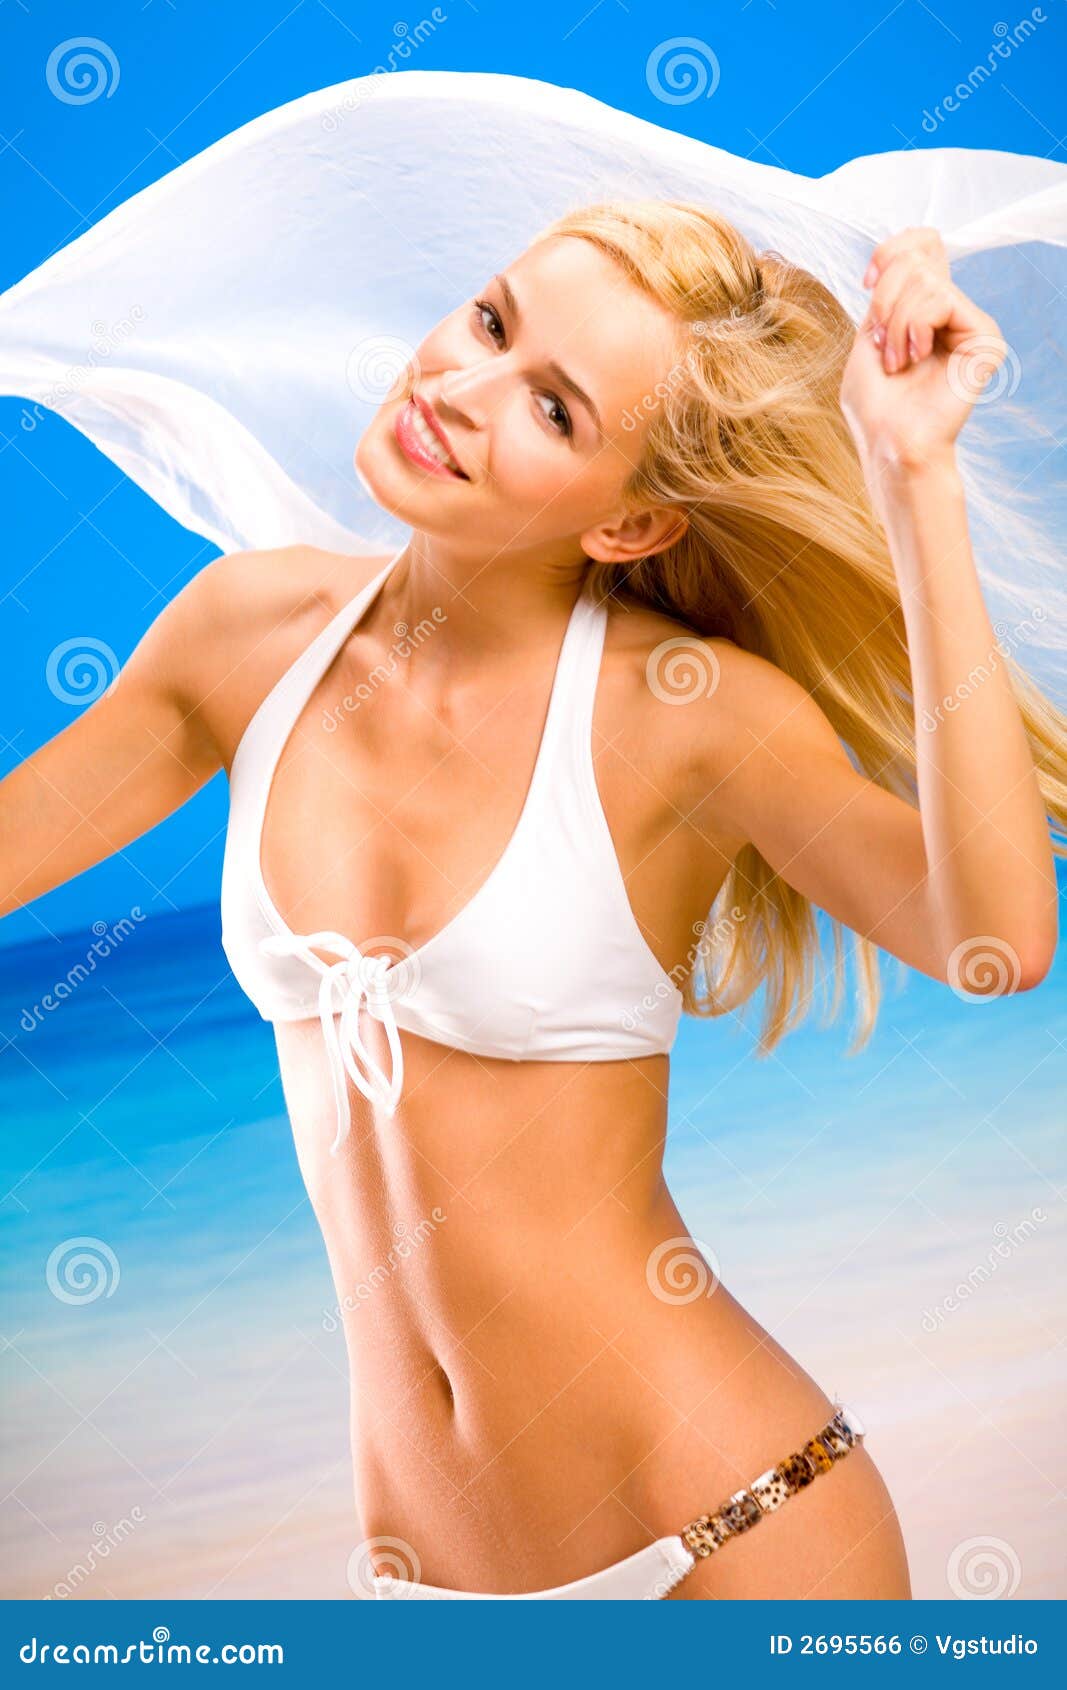 Women In Bikini Images 9